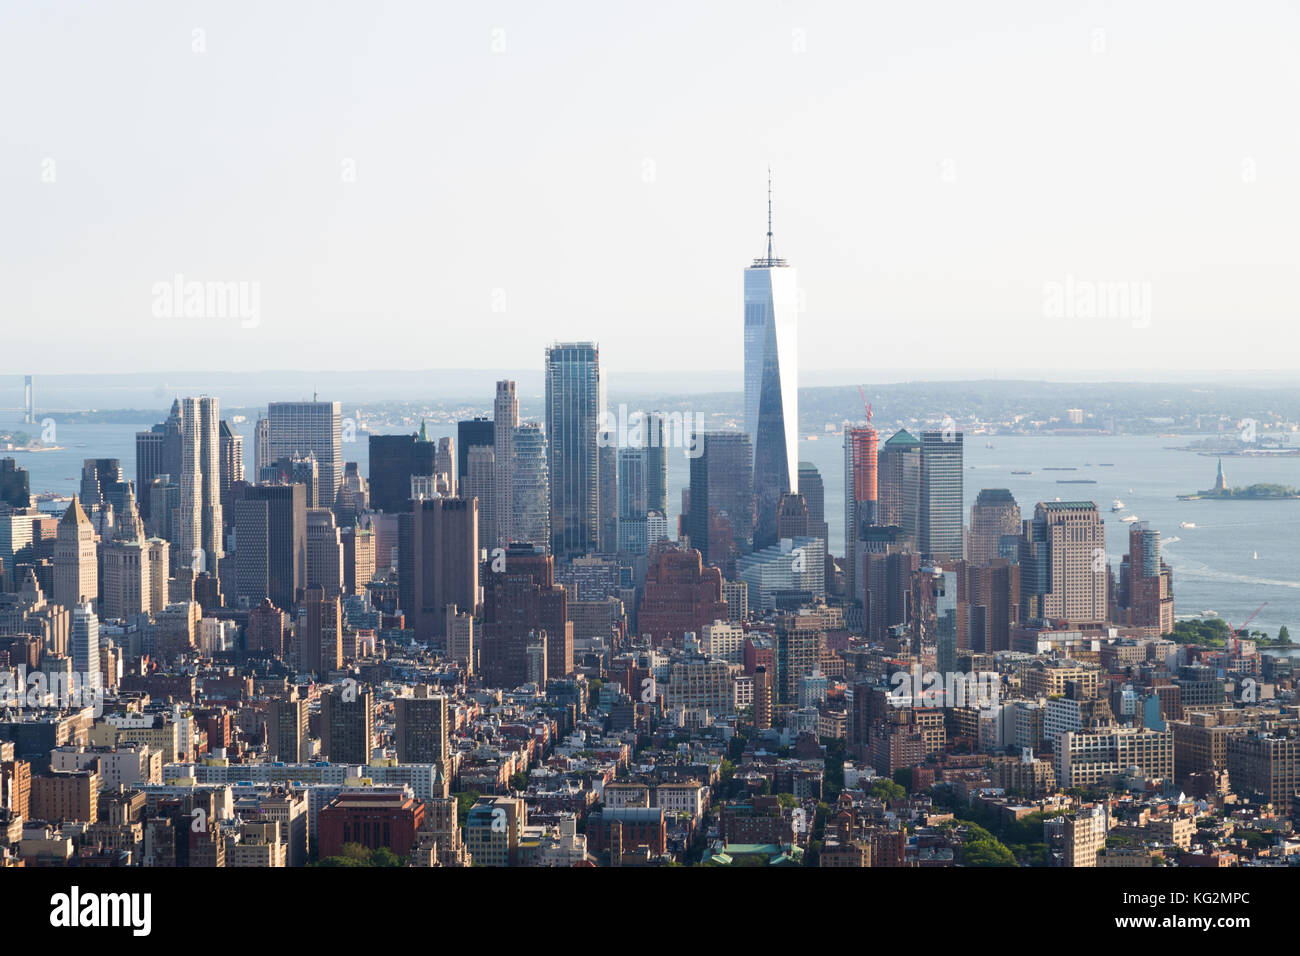 Panorama-Foto von der Skyline von Manhattan, Skyscrappers, Gebäuden, Fluss an sonnigen Tagen. Stockfoto